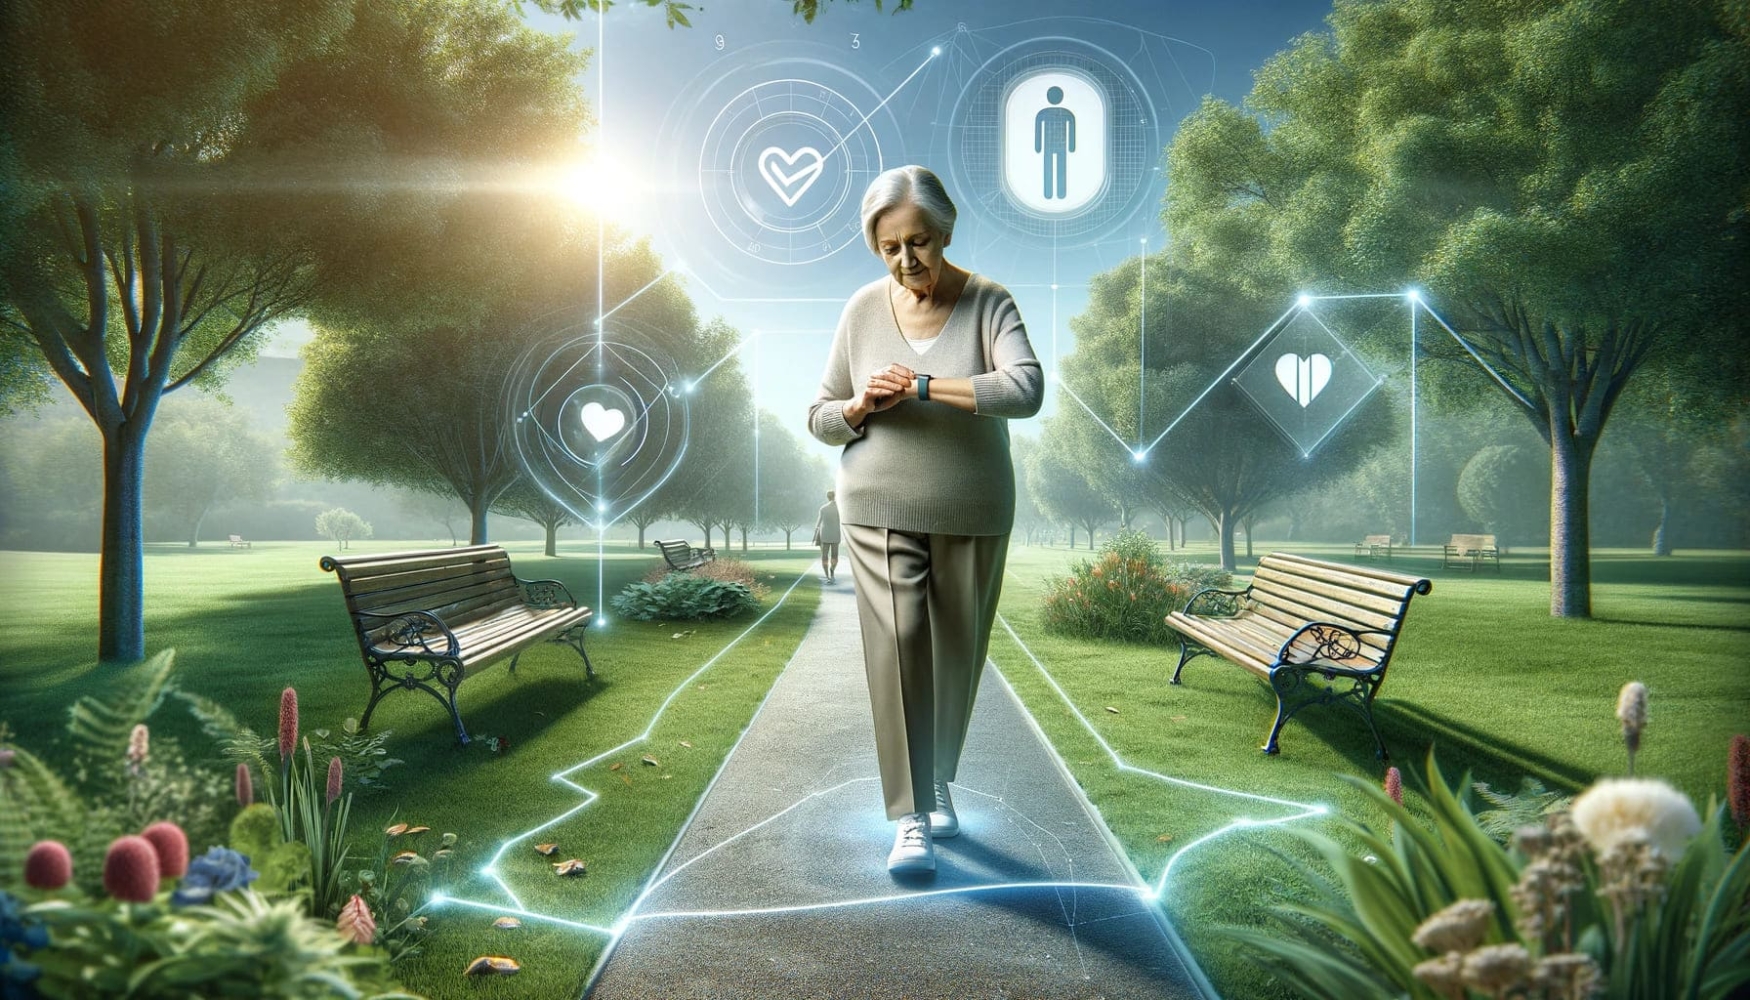 Una anciana pasea por un parque con un localizador GPS en la muñeca. Iconos digitales flotan a su alrededor, simbolizando la red de seguridad que la mantiene a salvo de la demencia